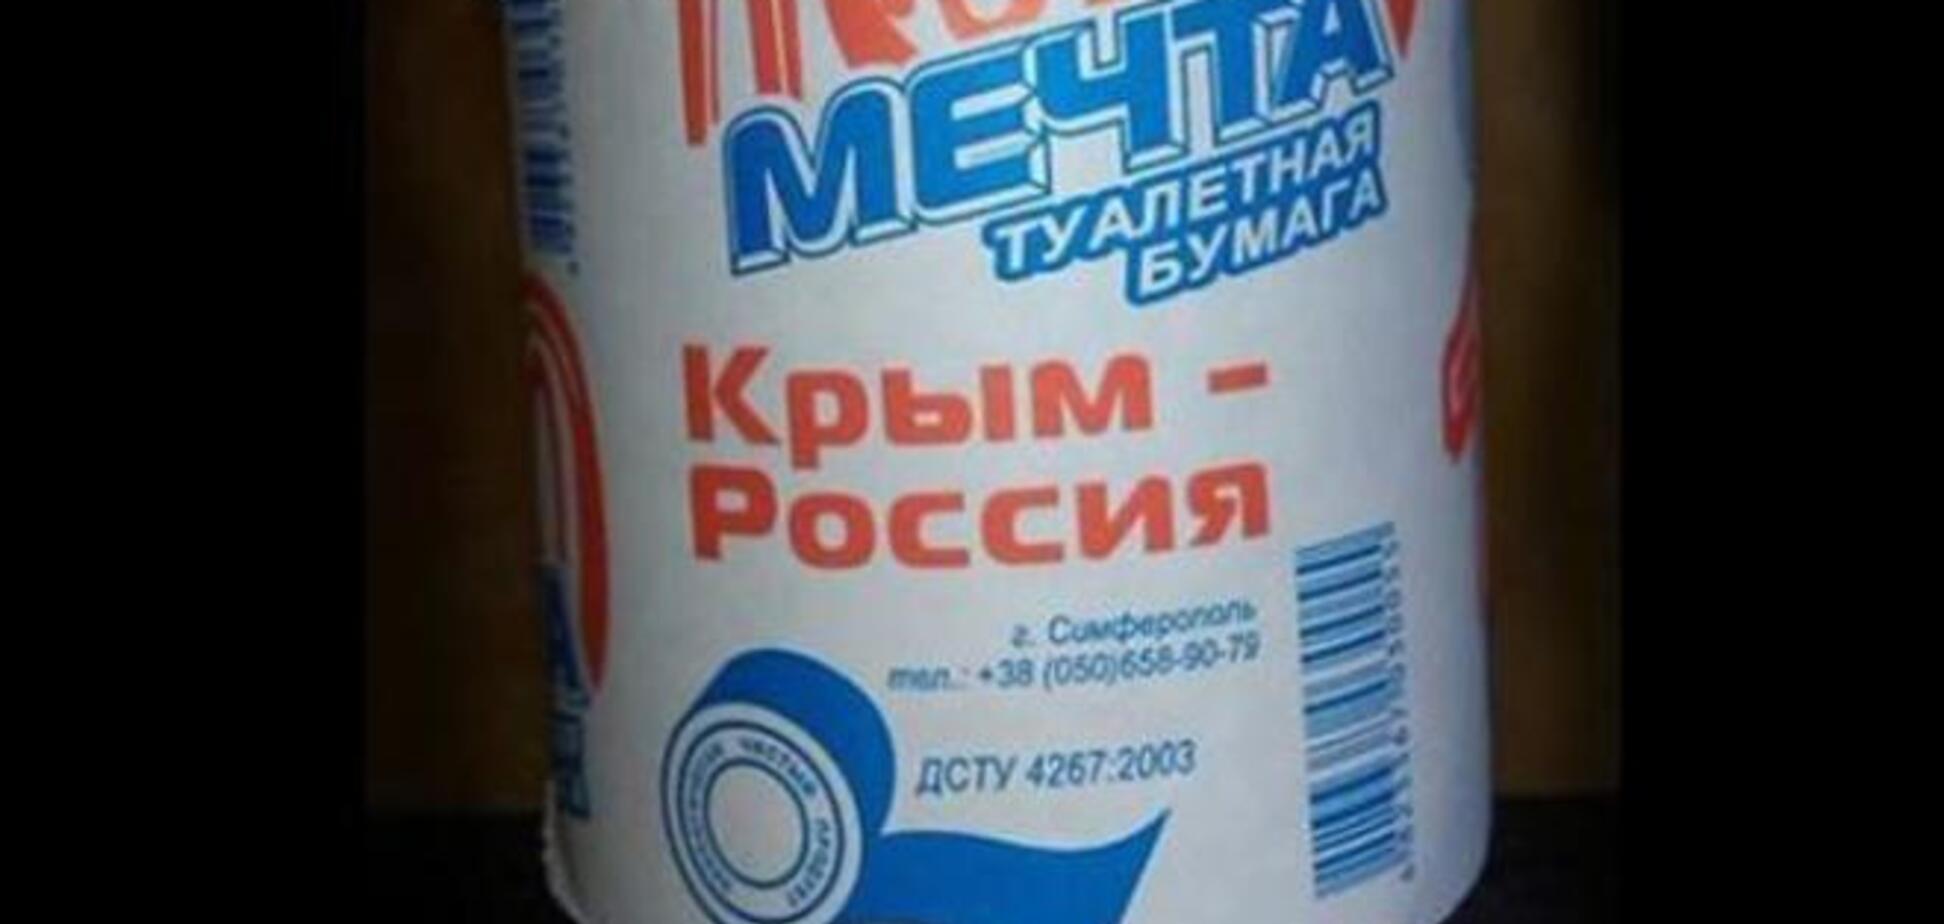 У Криму випустили туалетний папір 'Мрія': 'Крим - Росія'